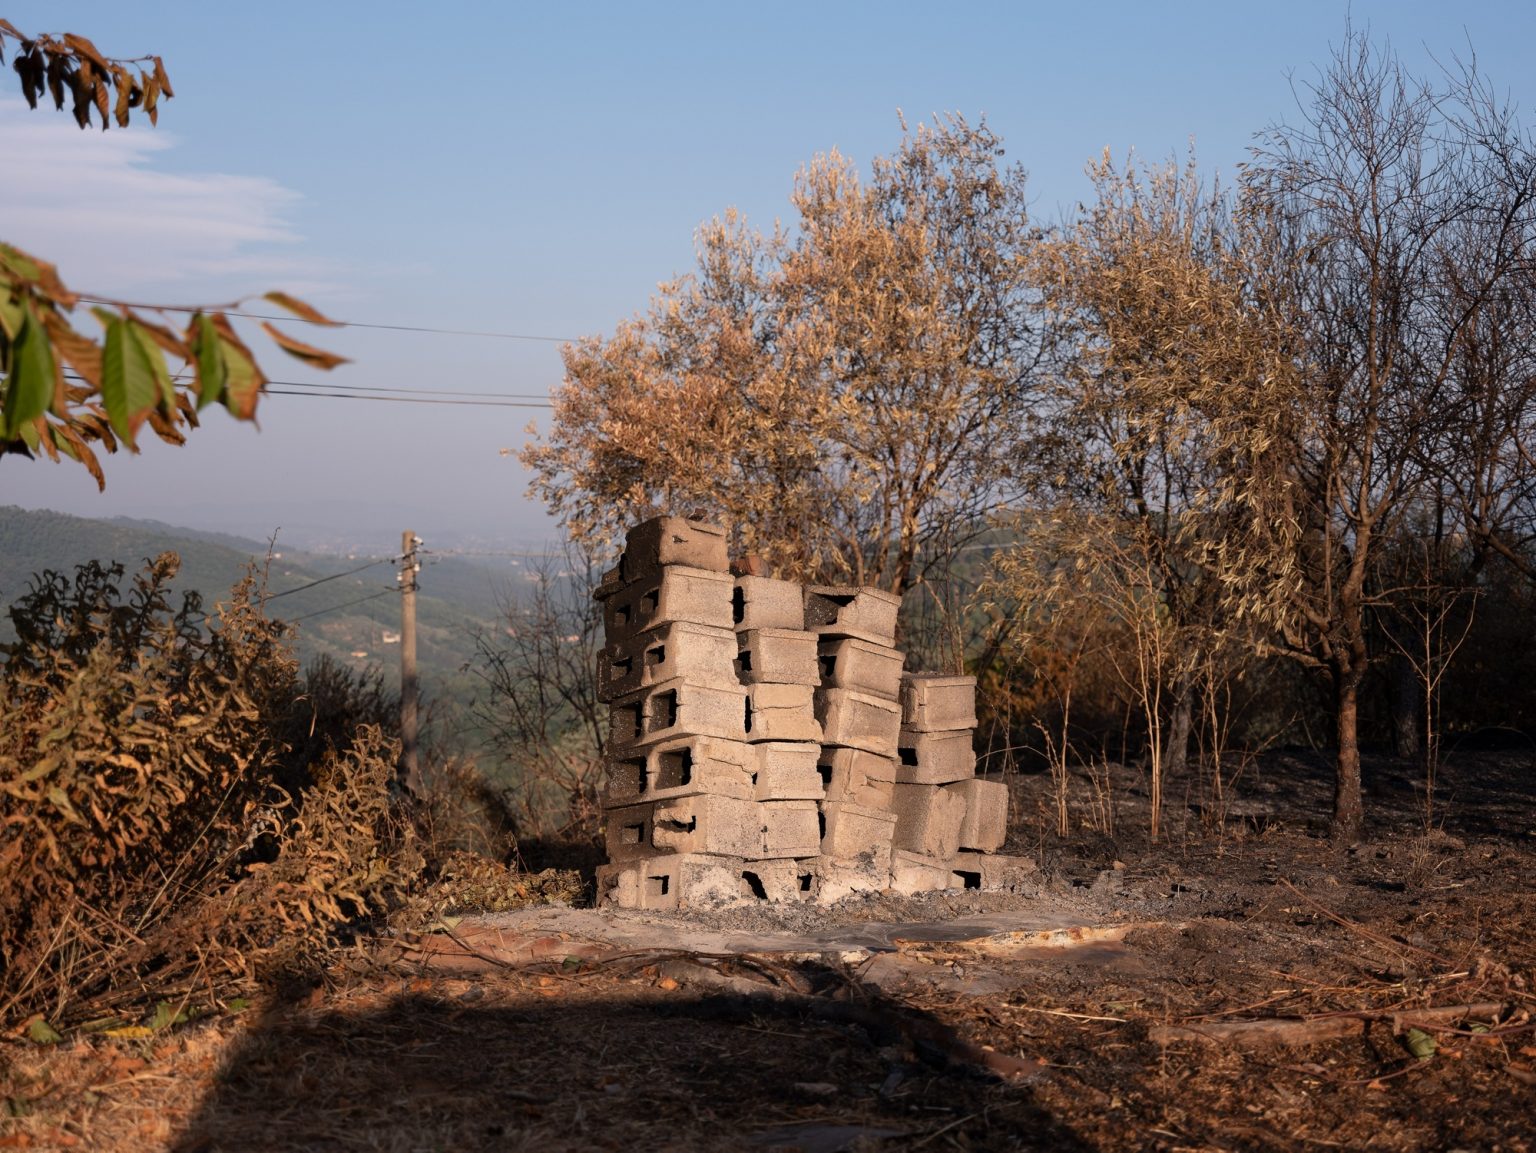 Terreni distrutti dalle fiamme a Fibbialla.

Fibbialla (Lucca), Italia, 2022
-
-
Land destroyed by flames in Fibbialla.

Fibbialla (Lucca), Italy, 2022